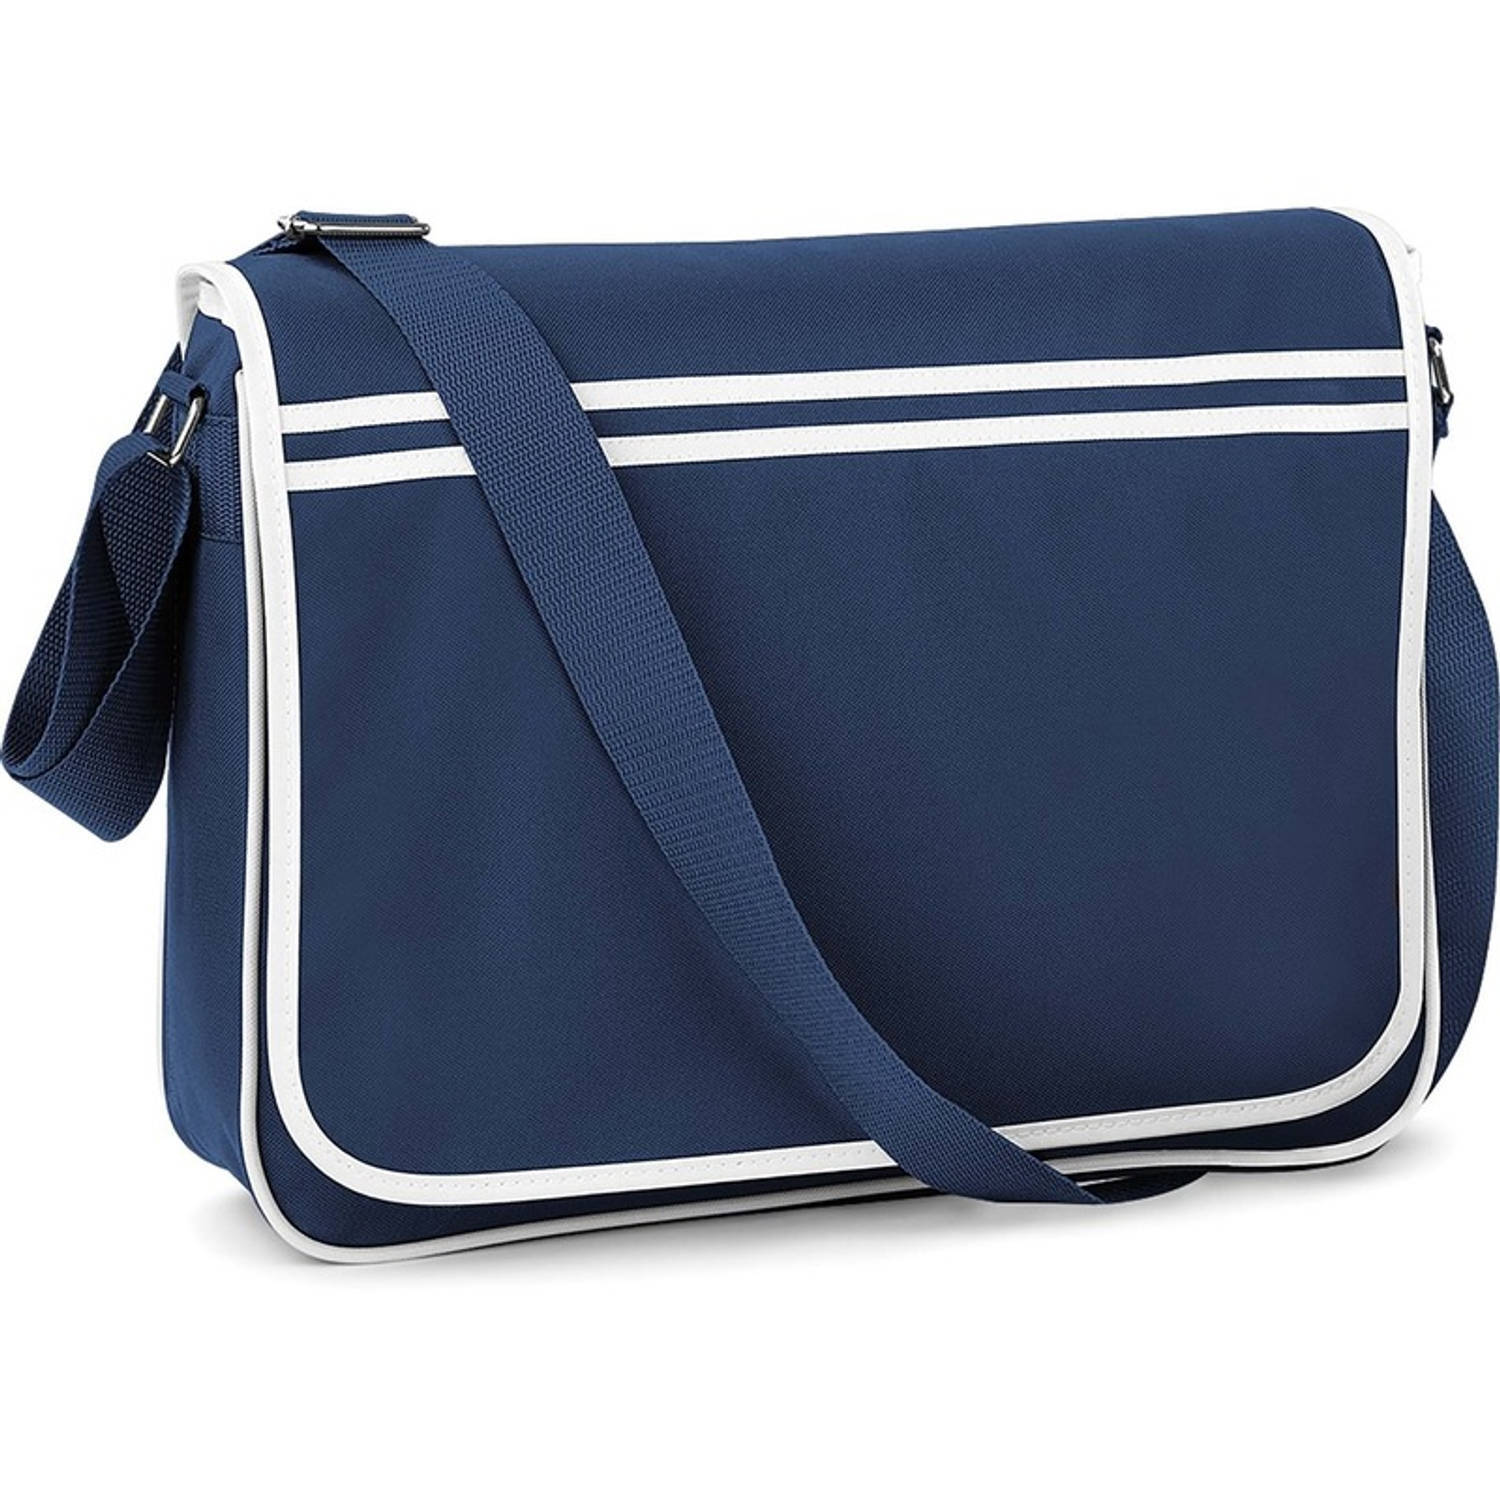 Bagbase Retro schoudertas/aktetas navy/wit 40 cm voor dames/heren - Schooltassen/laptop tassen met schouderband